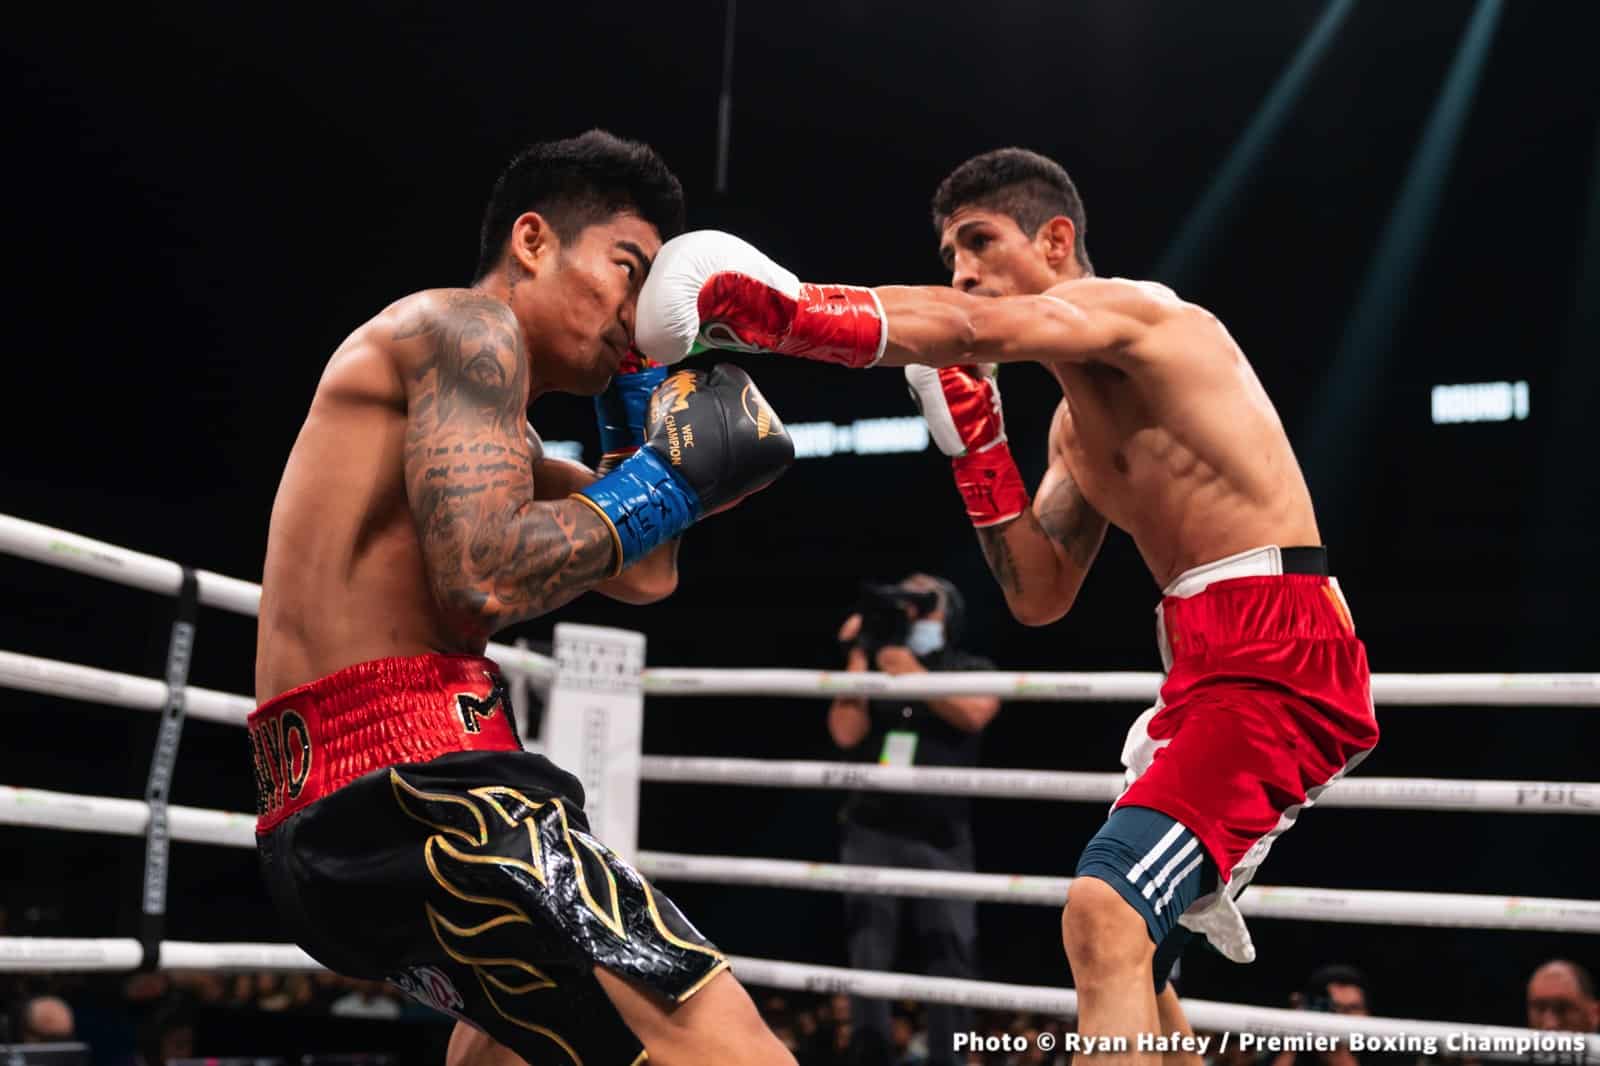 Rey Vargas boxing image / photo